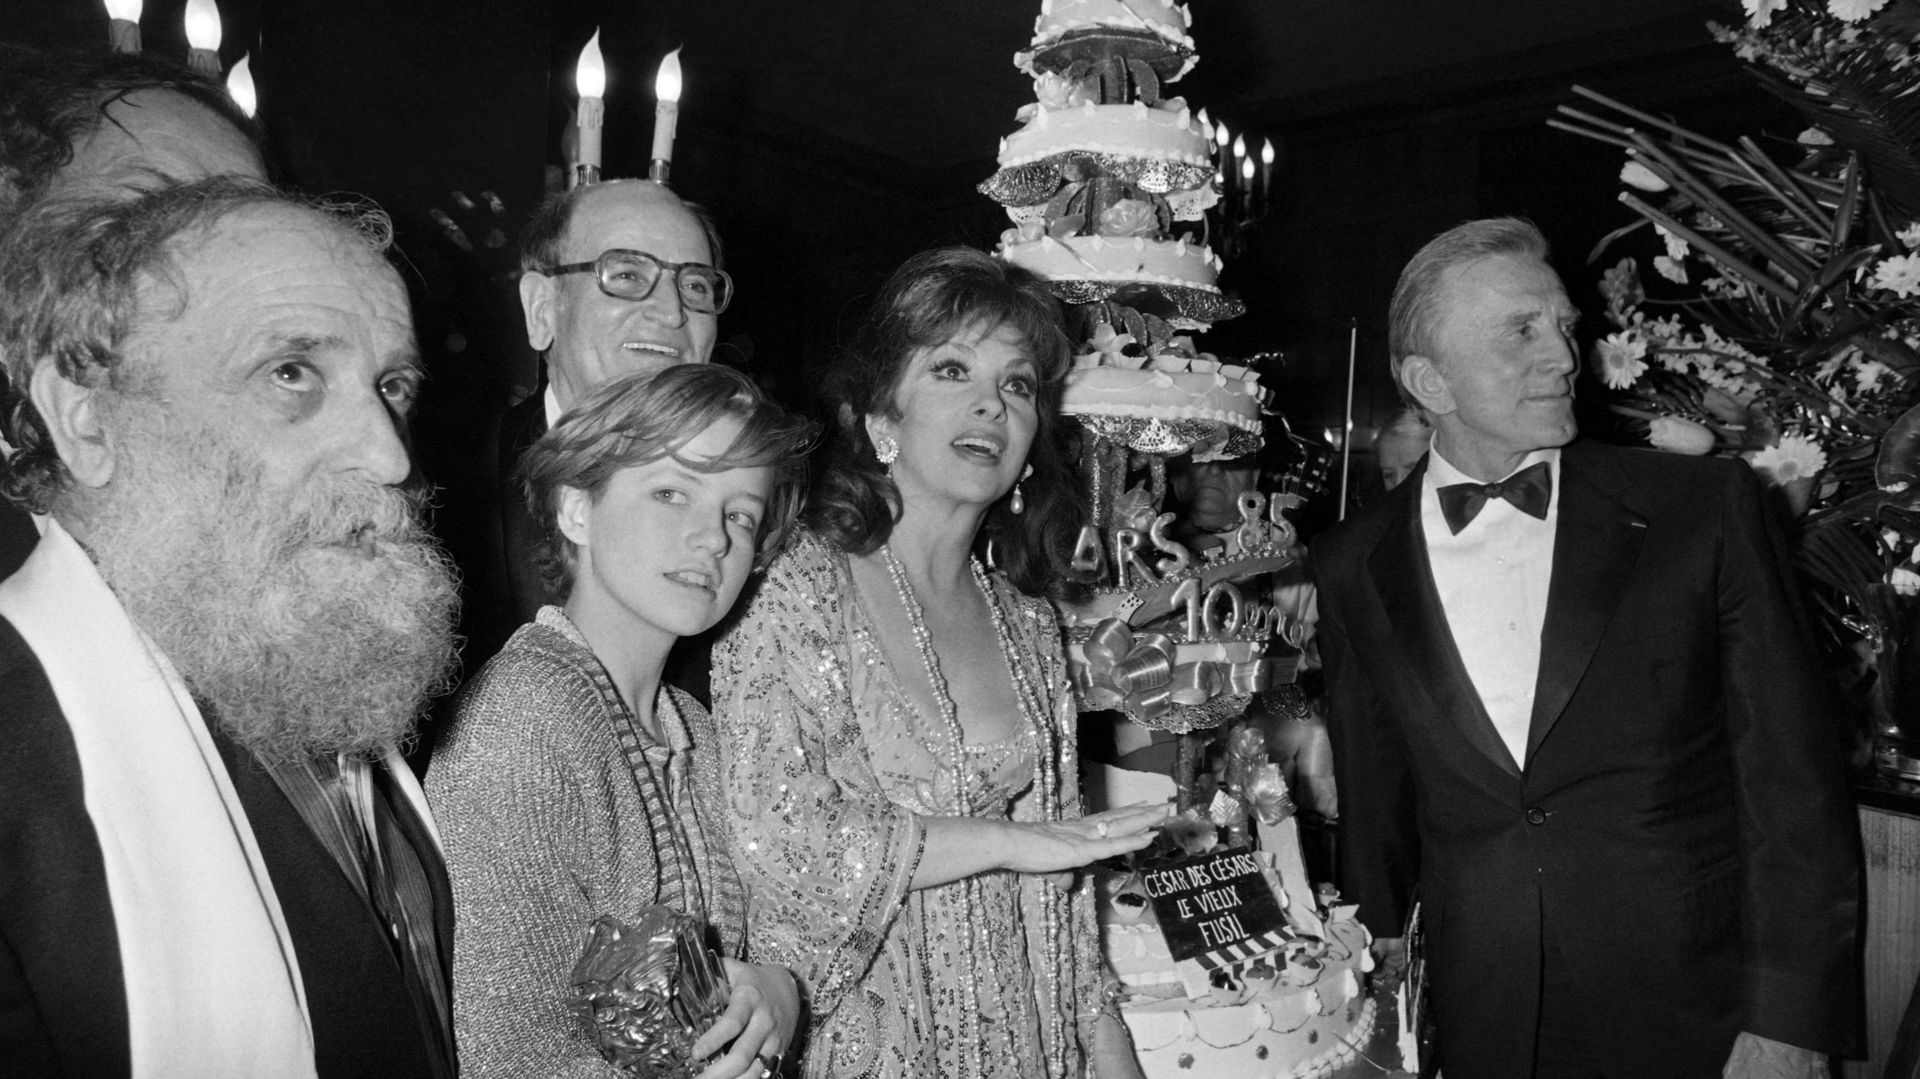 Le sculpteur français César, l’actrice française Laure Marsac, l’actrice italienne Gina Lollobrigida et l’acteur américain Kirk Douglas posent à côté d’un gâteau à l’occasion de la 10e nuit des César, le 2 février 1980, à Paris.